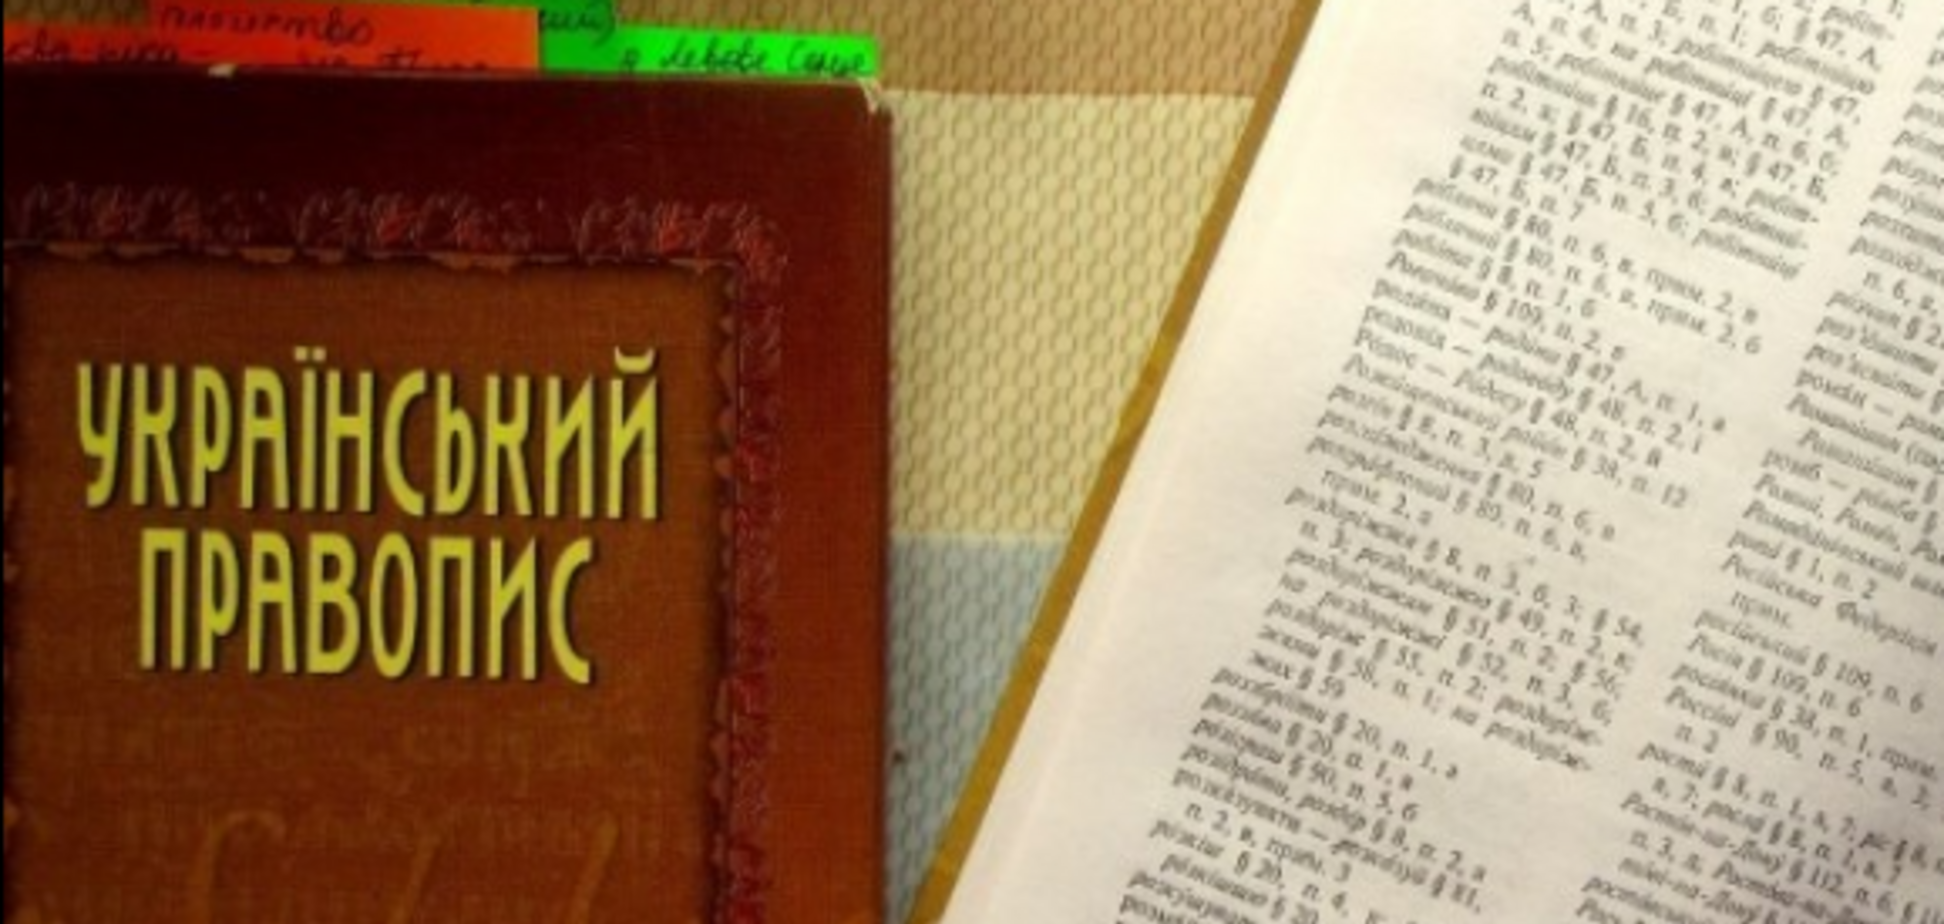 Мать ученицы обжаловала в суде новые правила украинского правописания